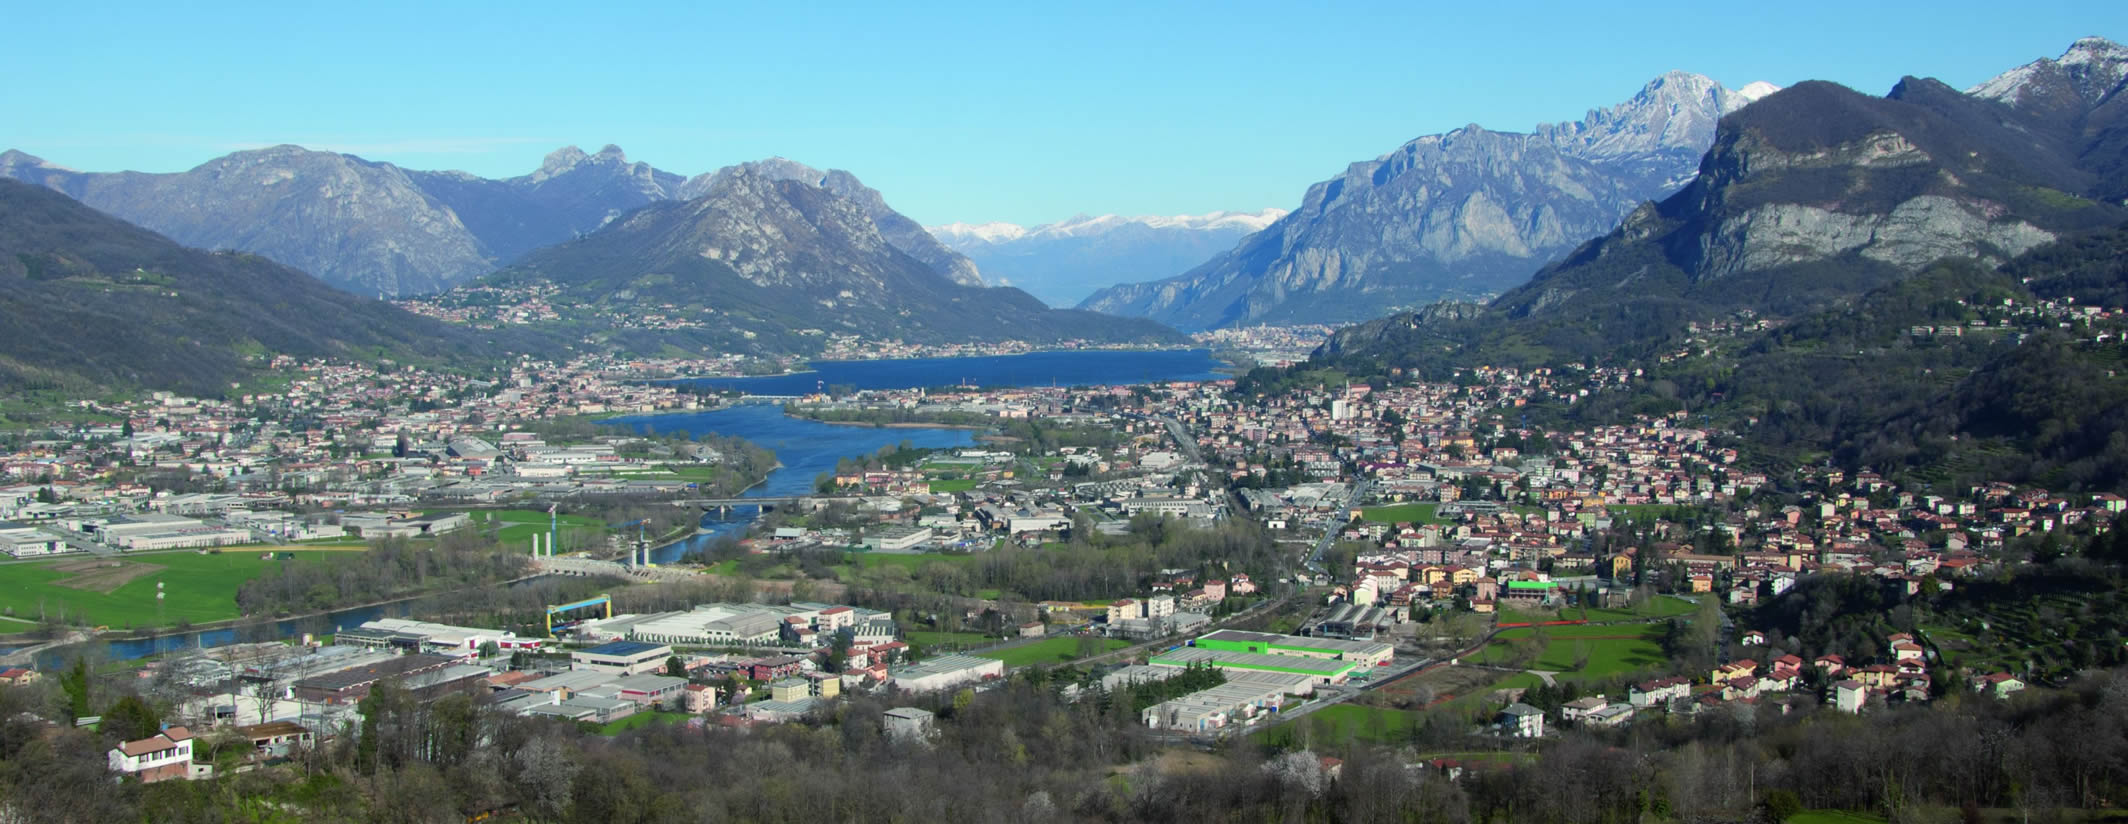 Panoramica da Monte Marenzo sul territorio della Val San Martino e sui laghi di Olginate-Garlate - foto di Giuliano Butti